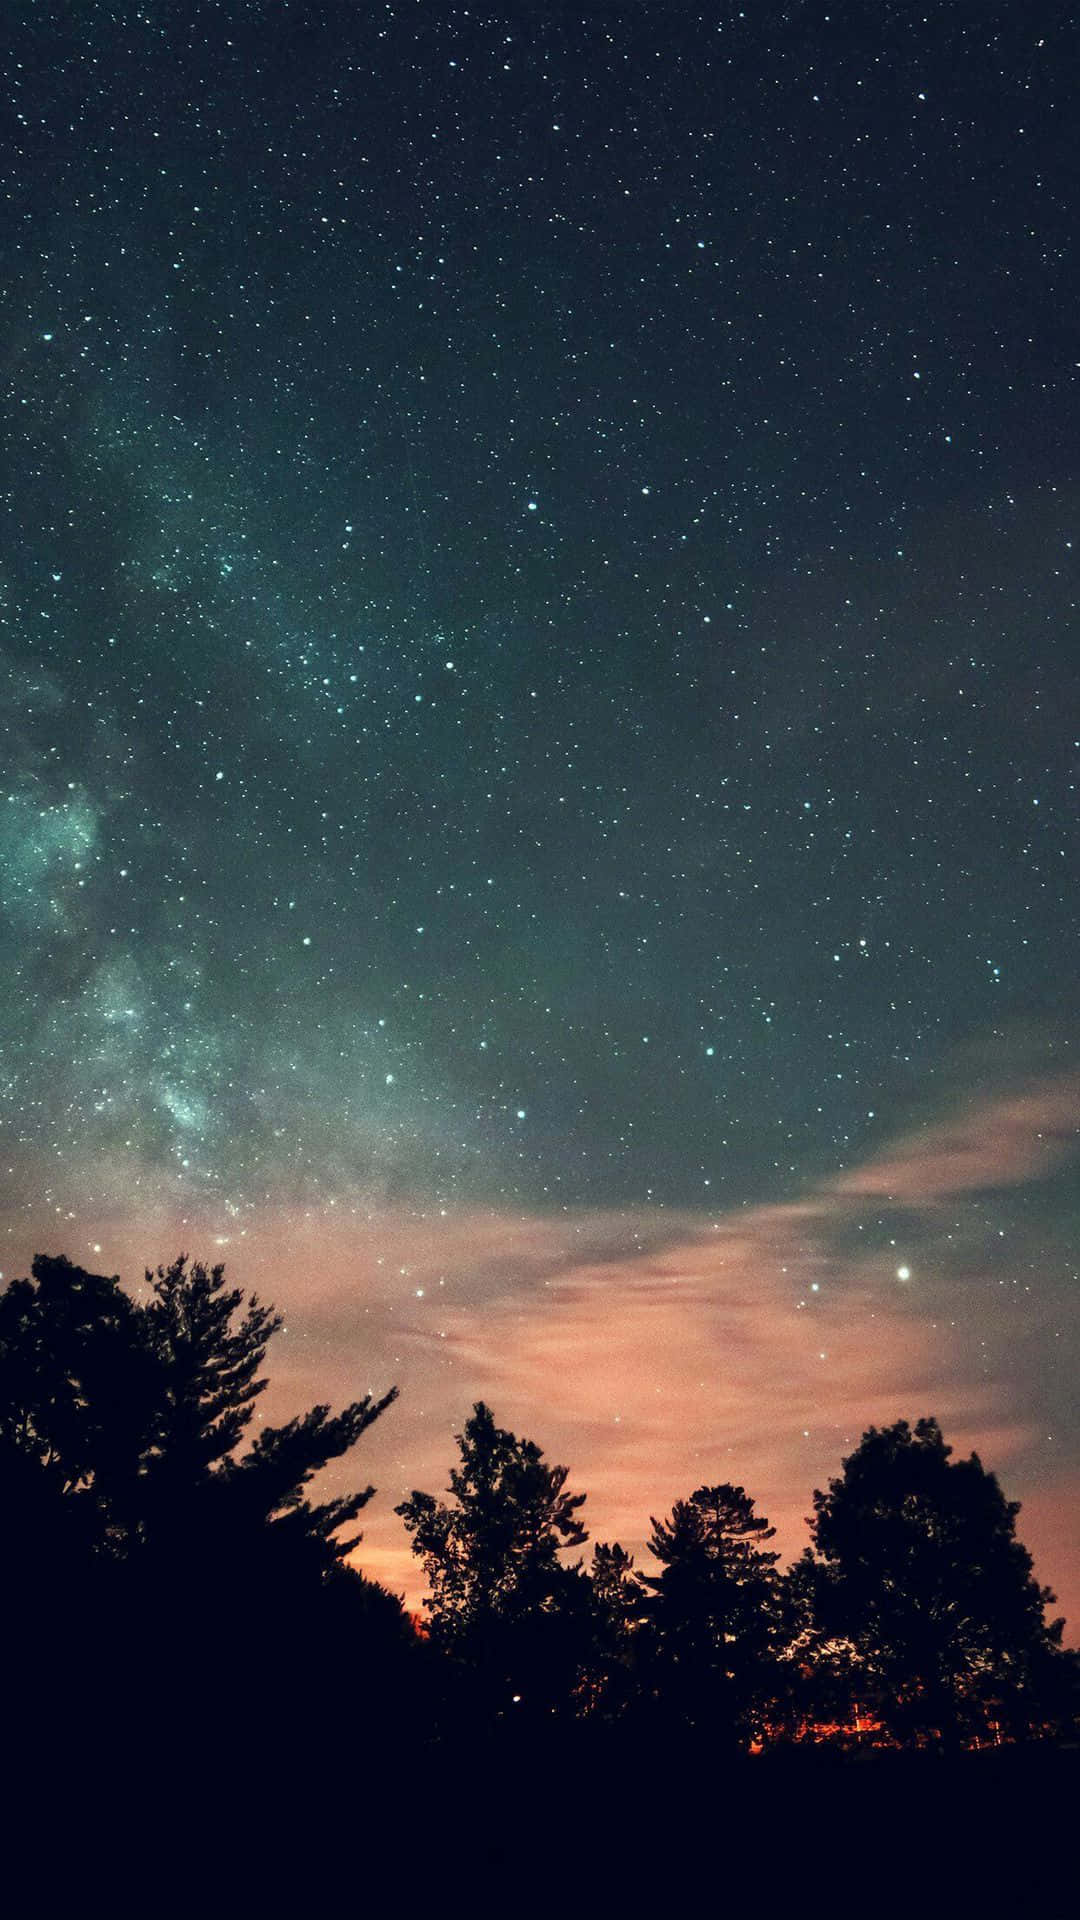 Denmjölkiga Himlen Och Stjärnorna Visas Ovanför Ett Träd På Bakgrundsbilden För Datorn Eller Mobilen.